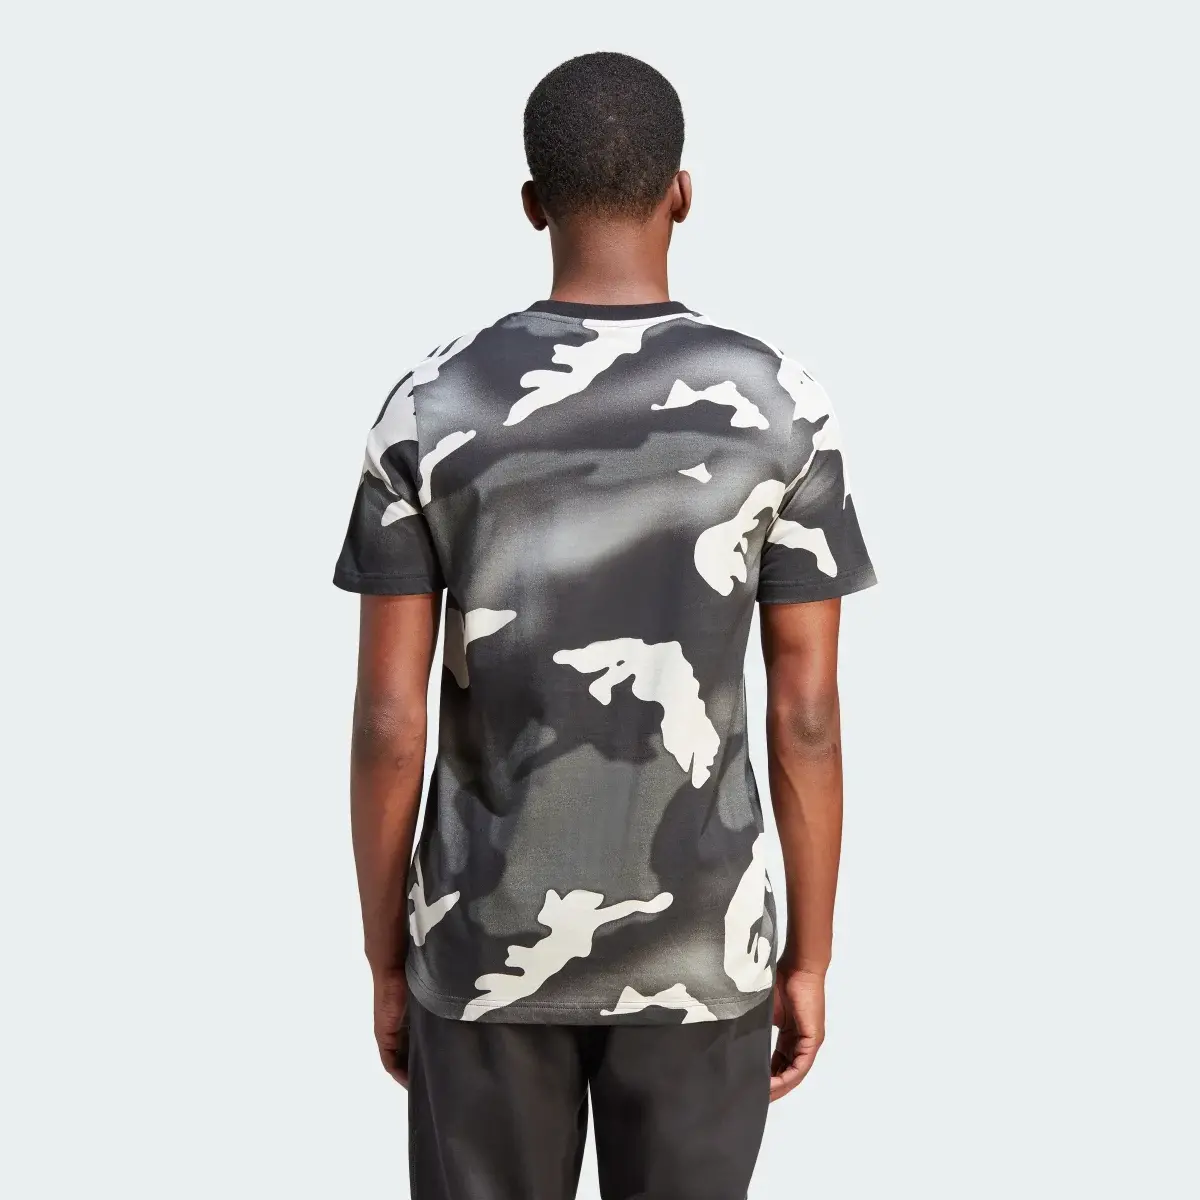 Adidas T-shirt graphique à imprimé camouflage intégral. 3